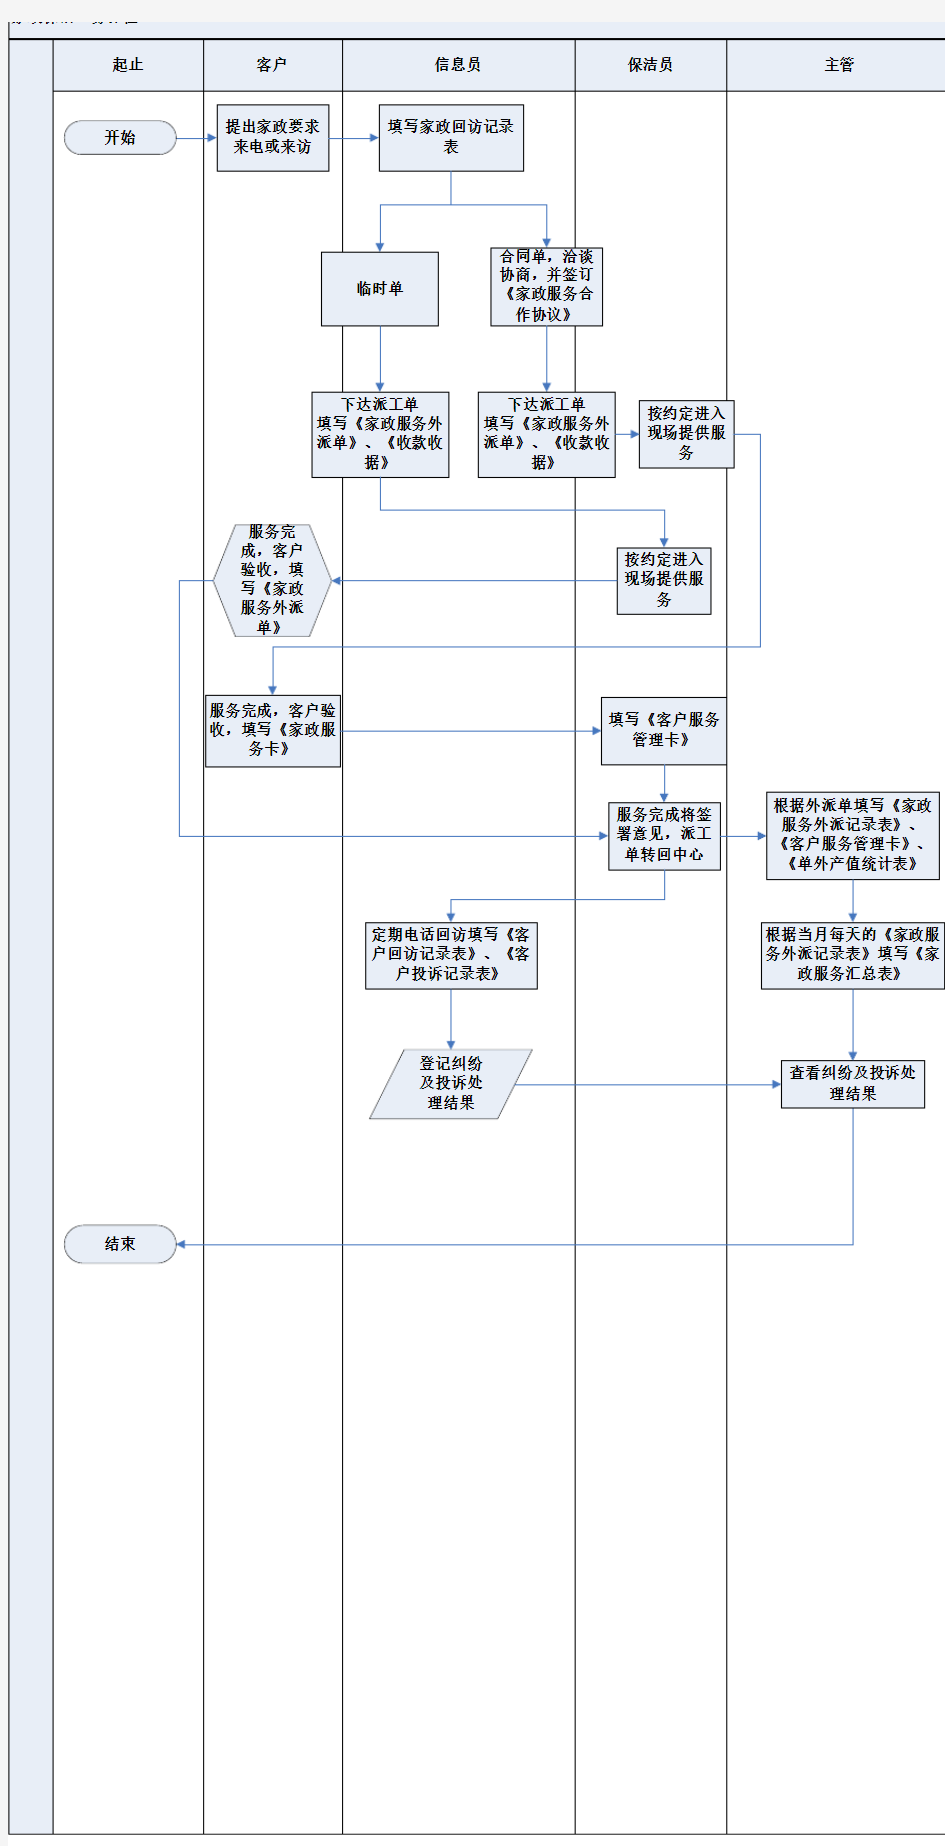 家政服务流程图3V1.0